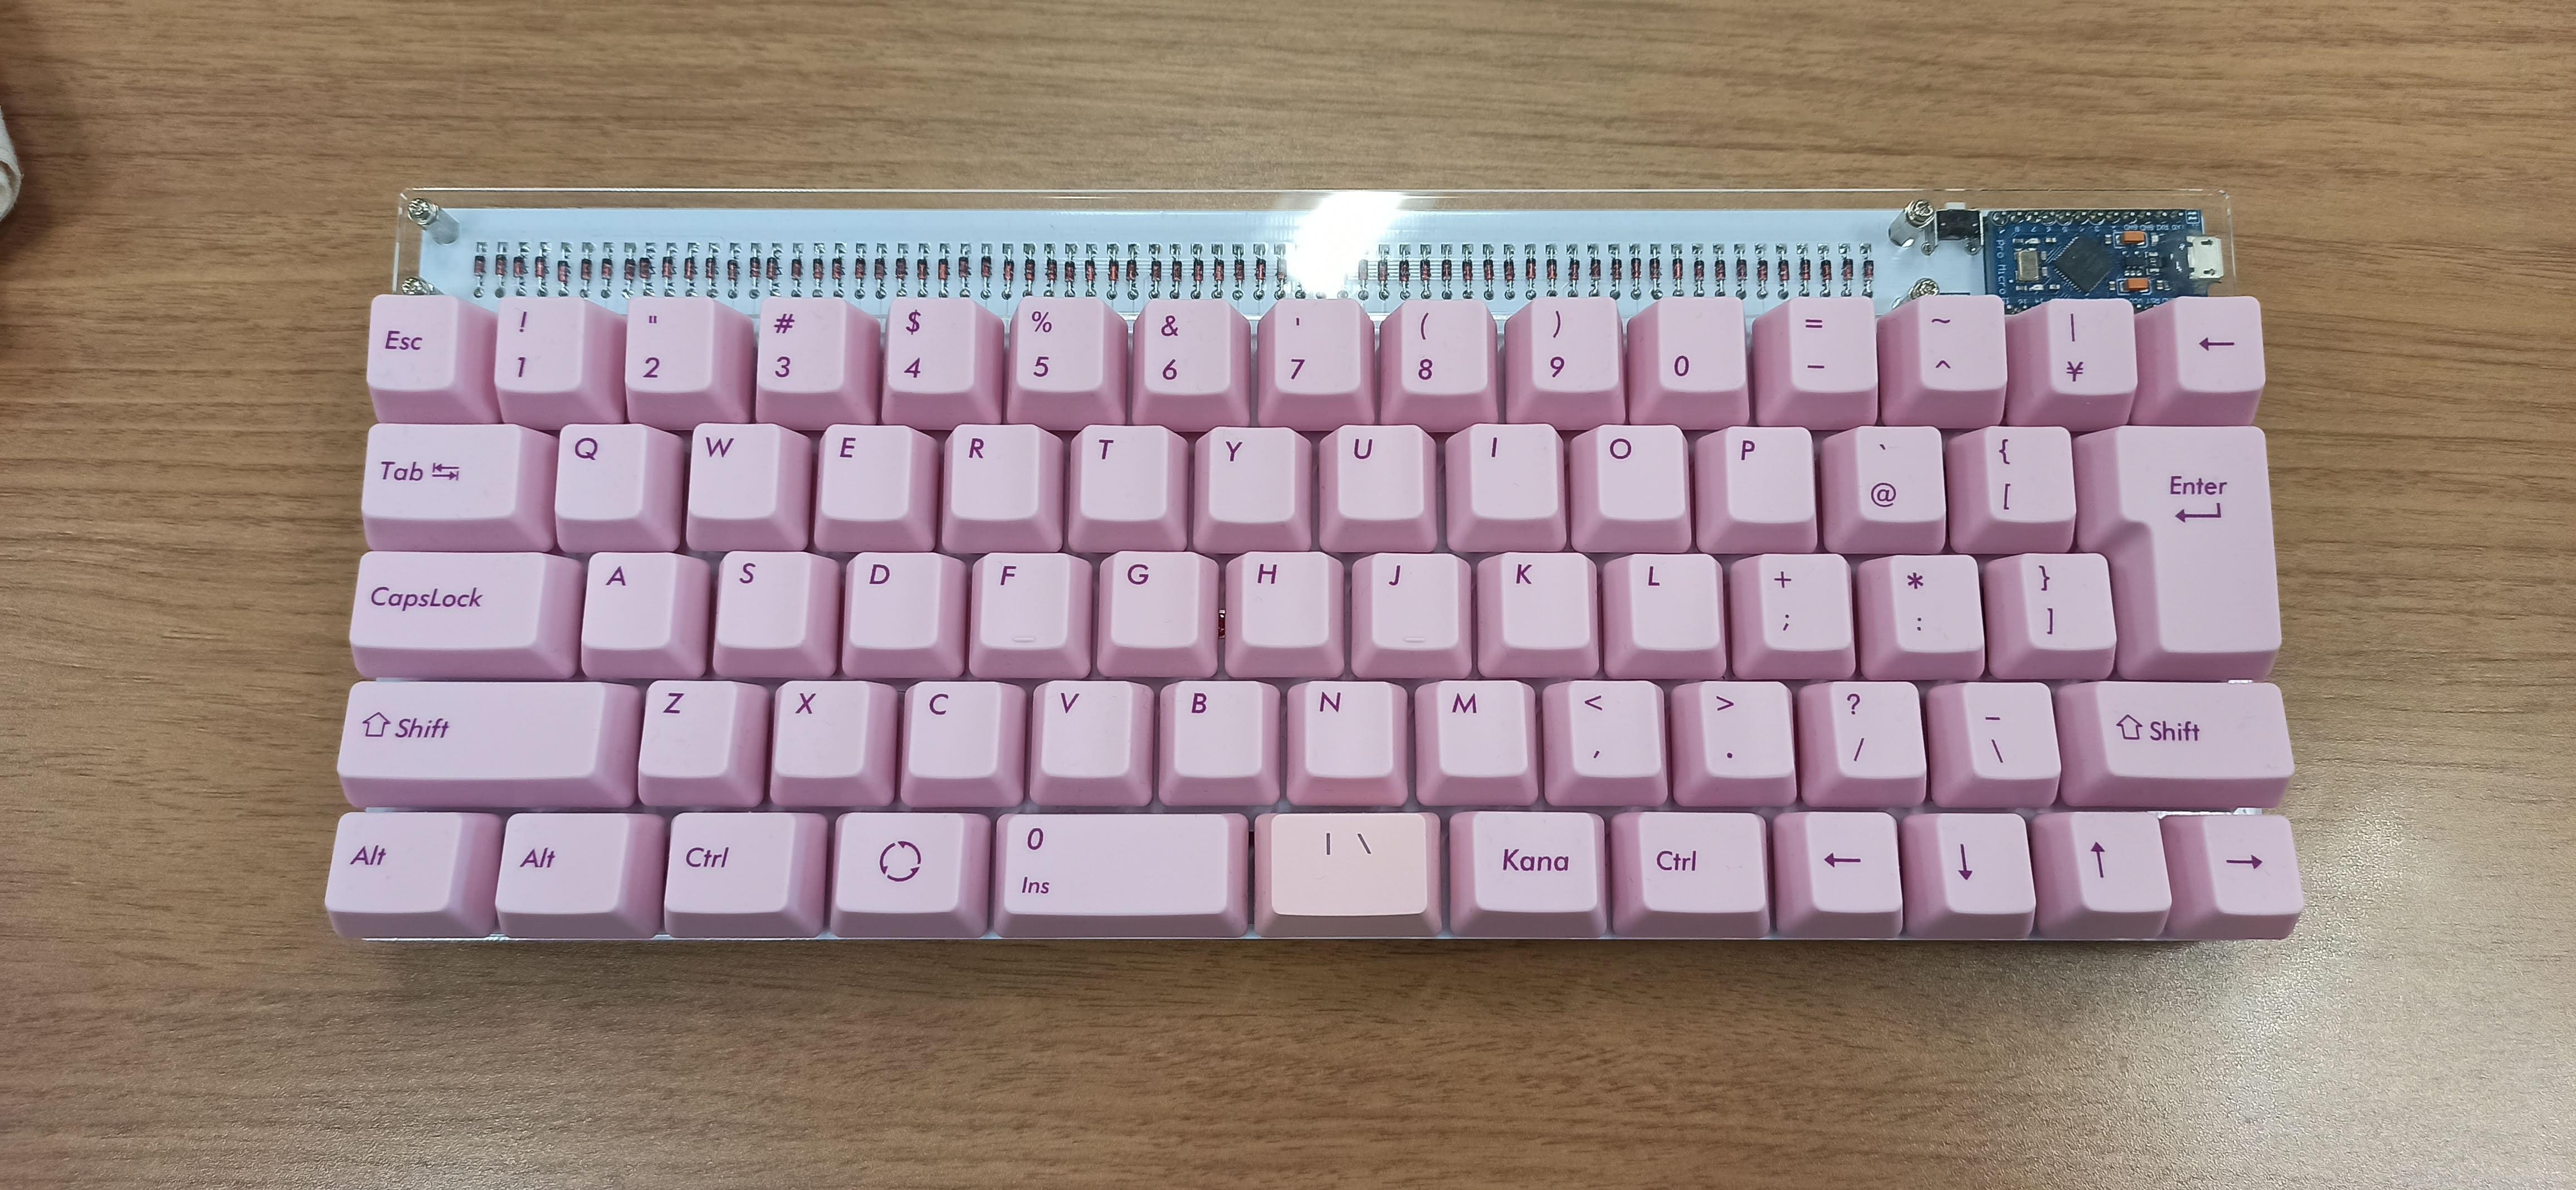 kana60 keyboard